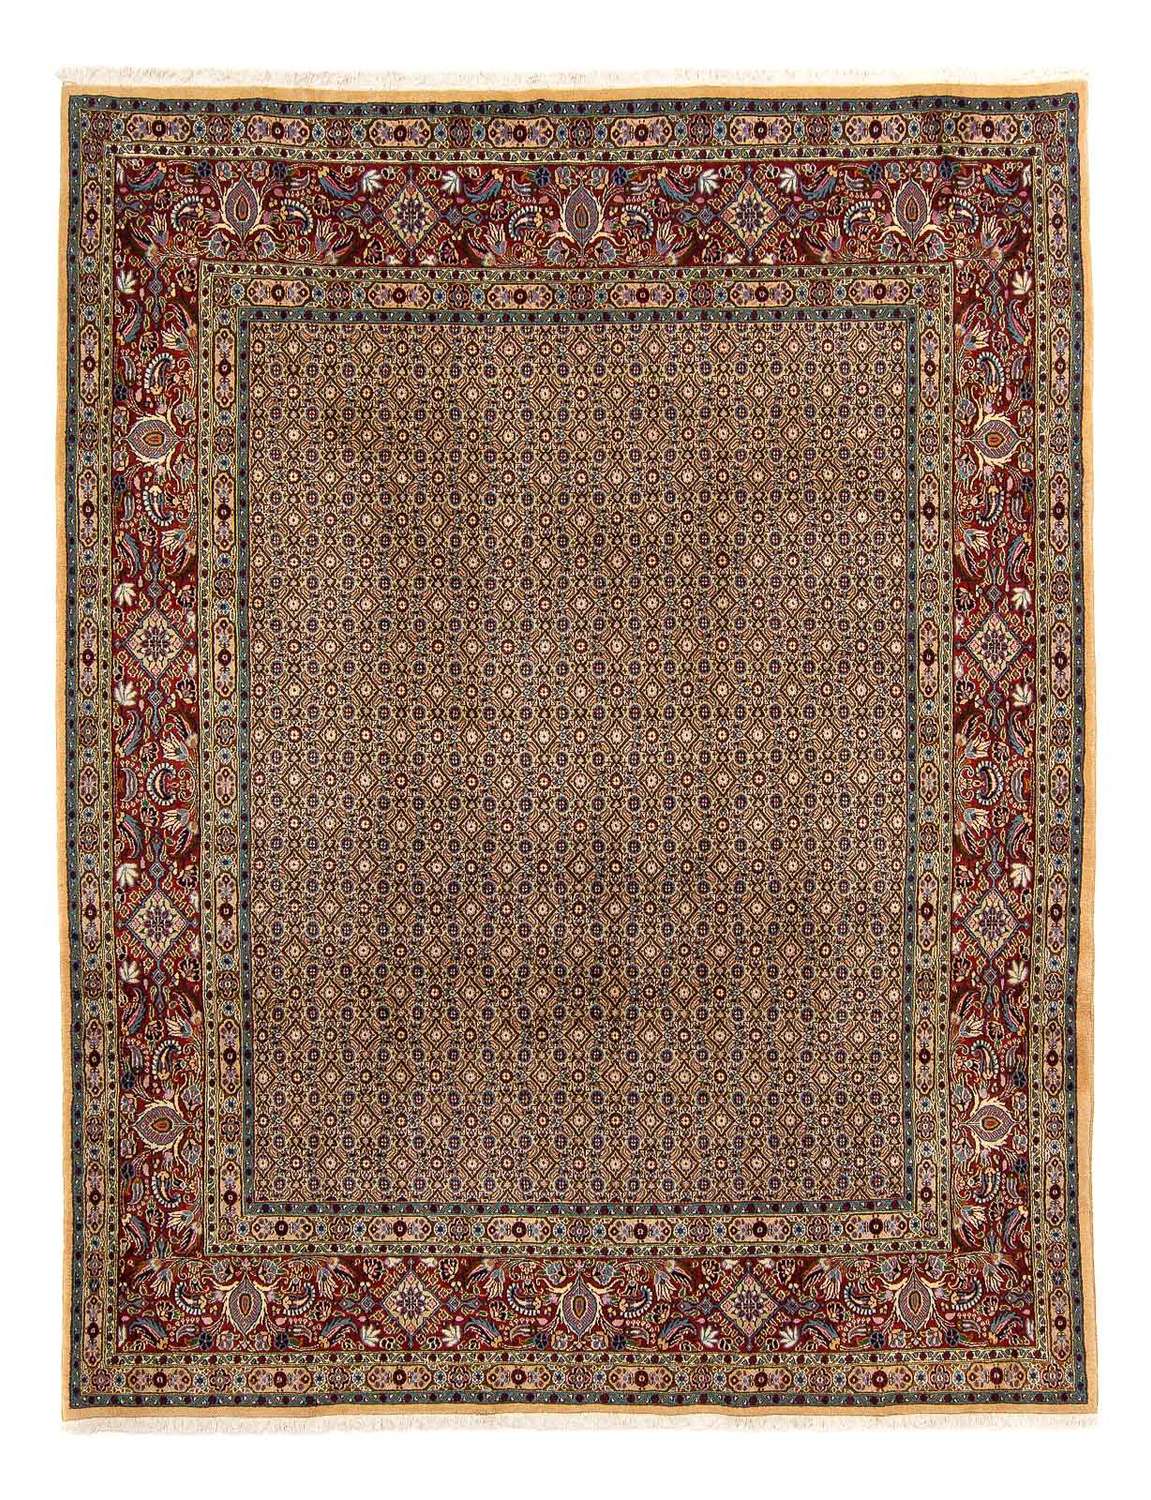 Tapis persan - Classique - 303 x 243 cm - multicolore